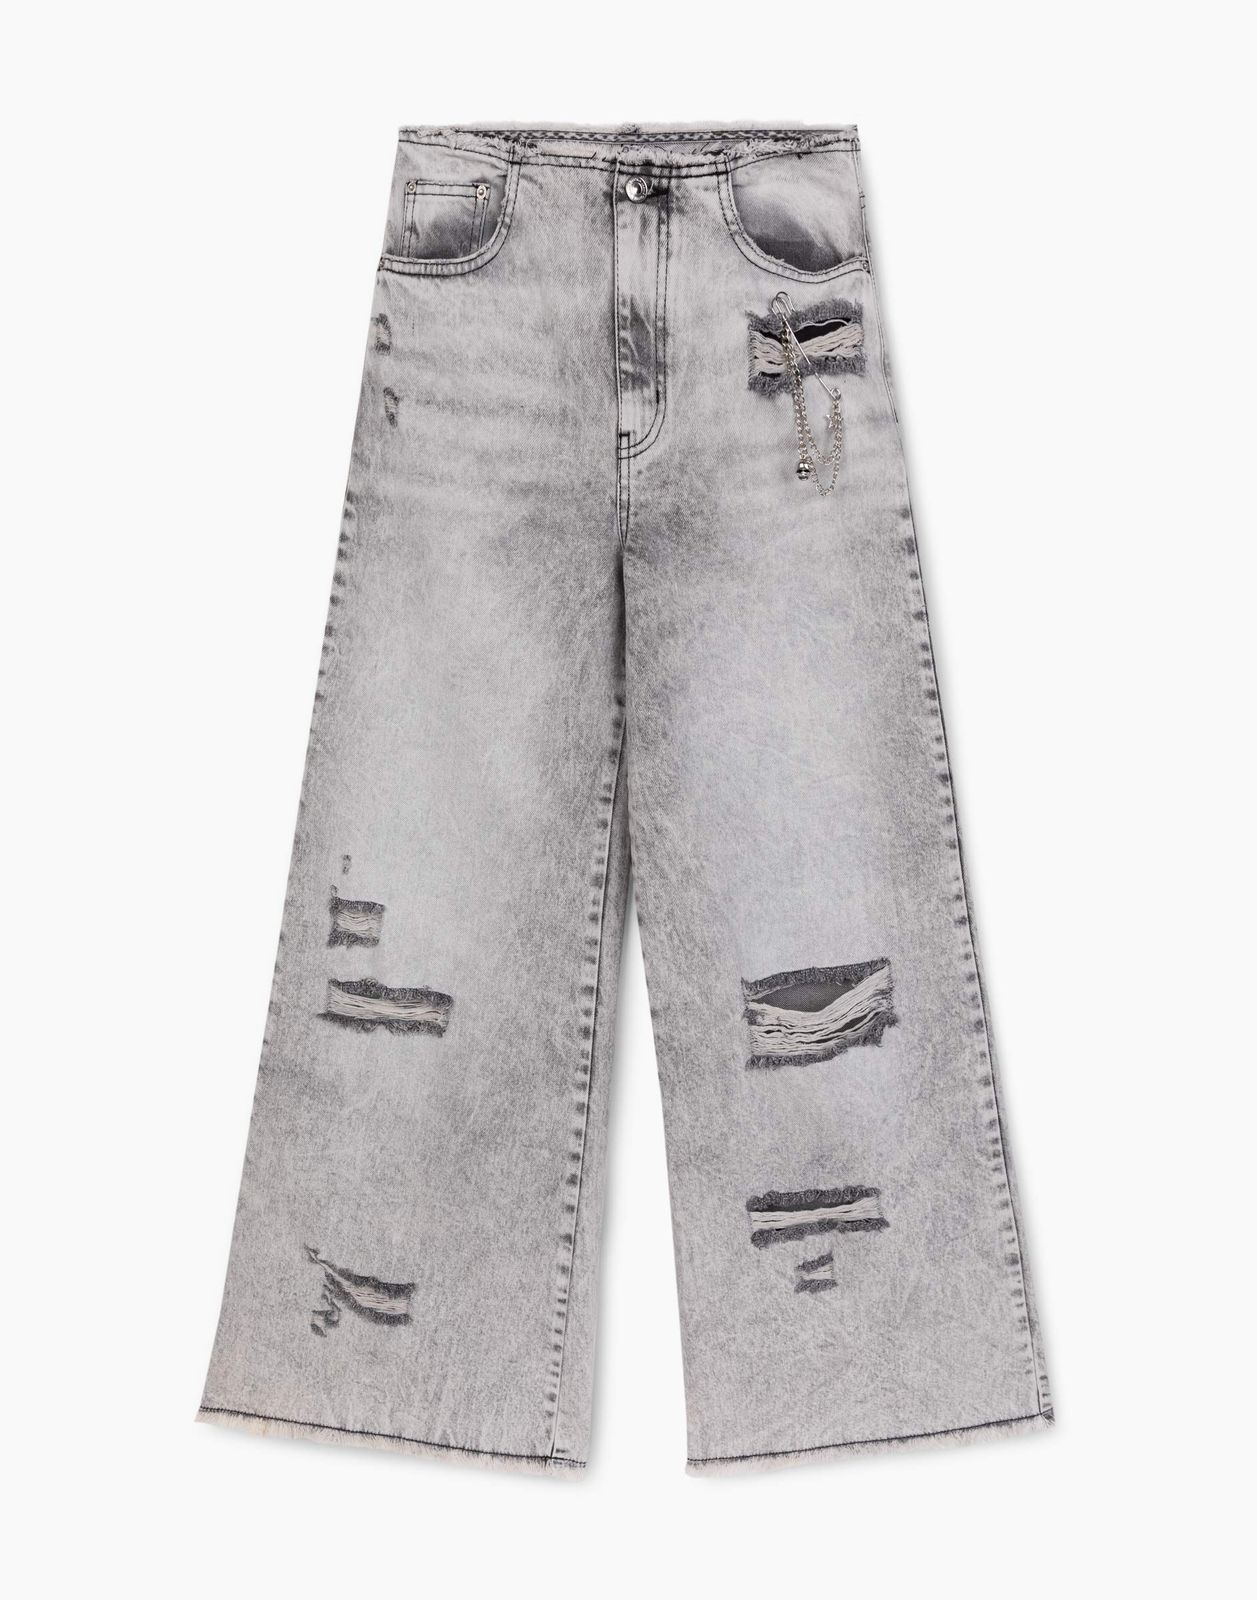 Джинсы Gloria Jeans GJN032569 серый /серый-лайт айс/ 15-16л/170 для девочки джинсы с декоративными дырками для девочки